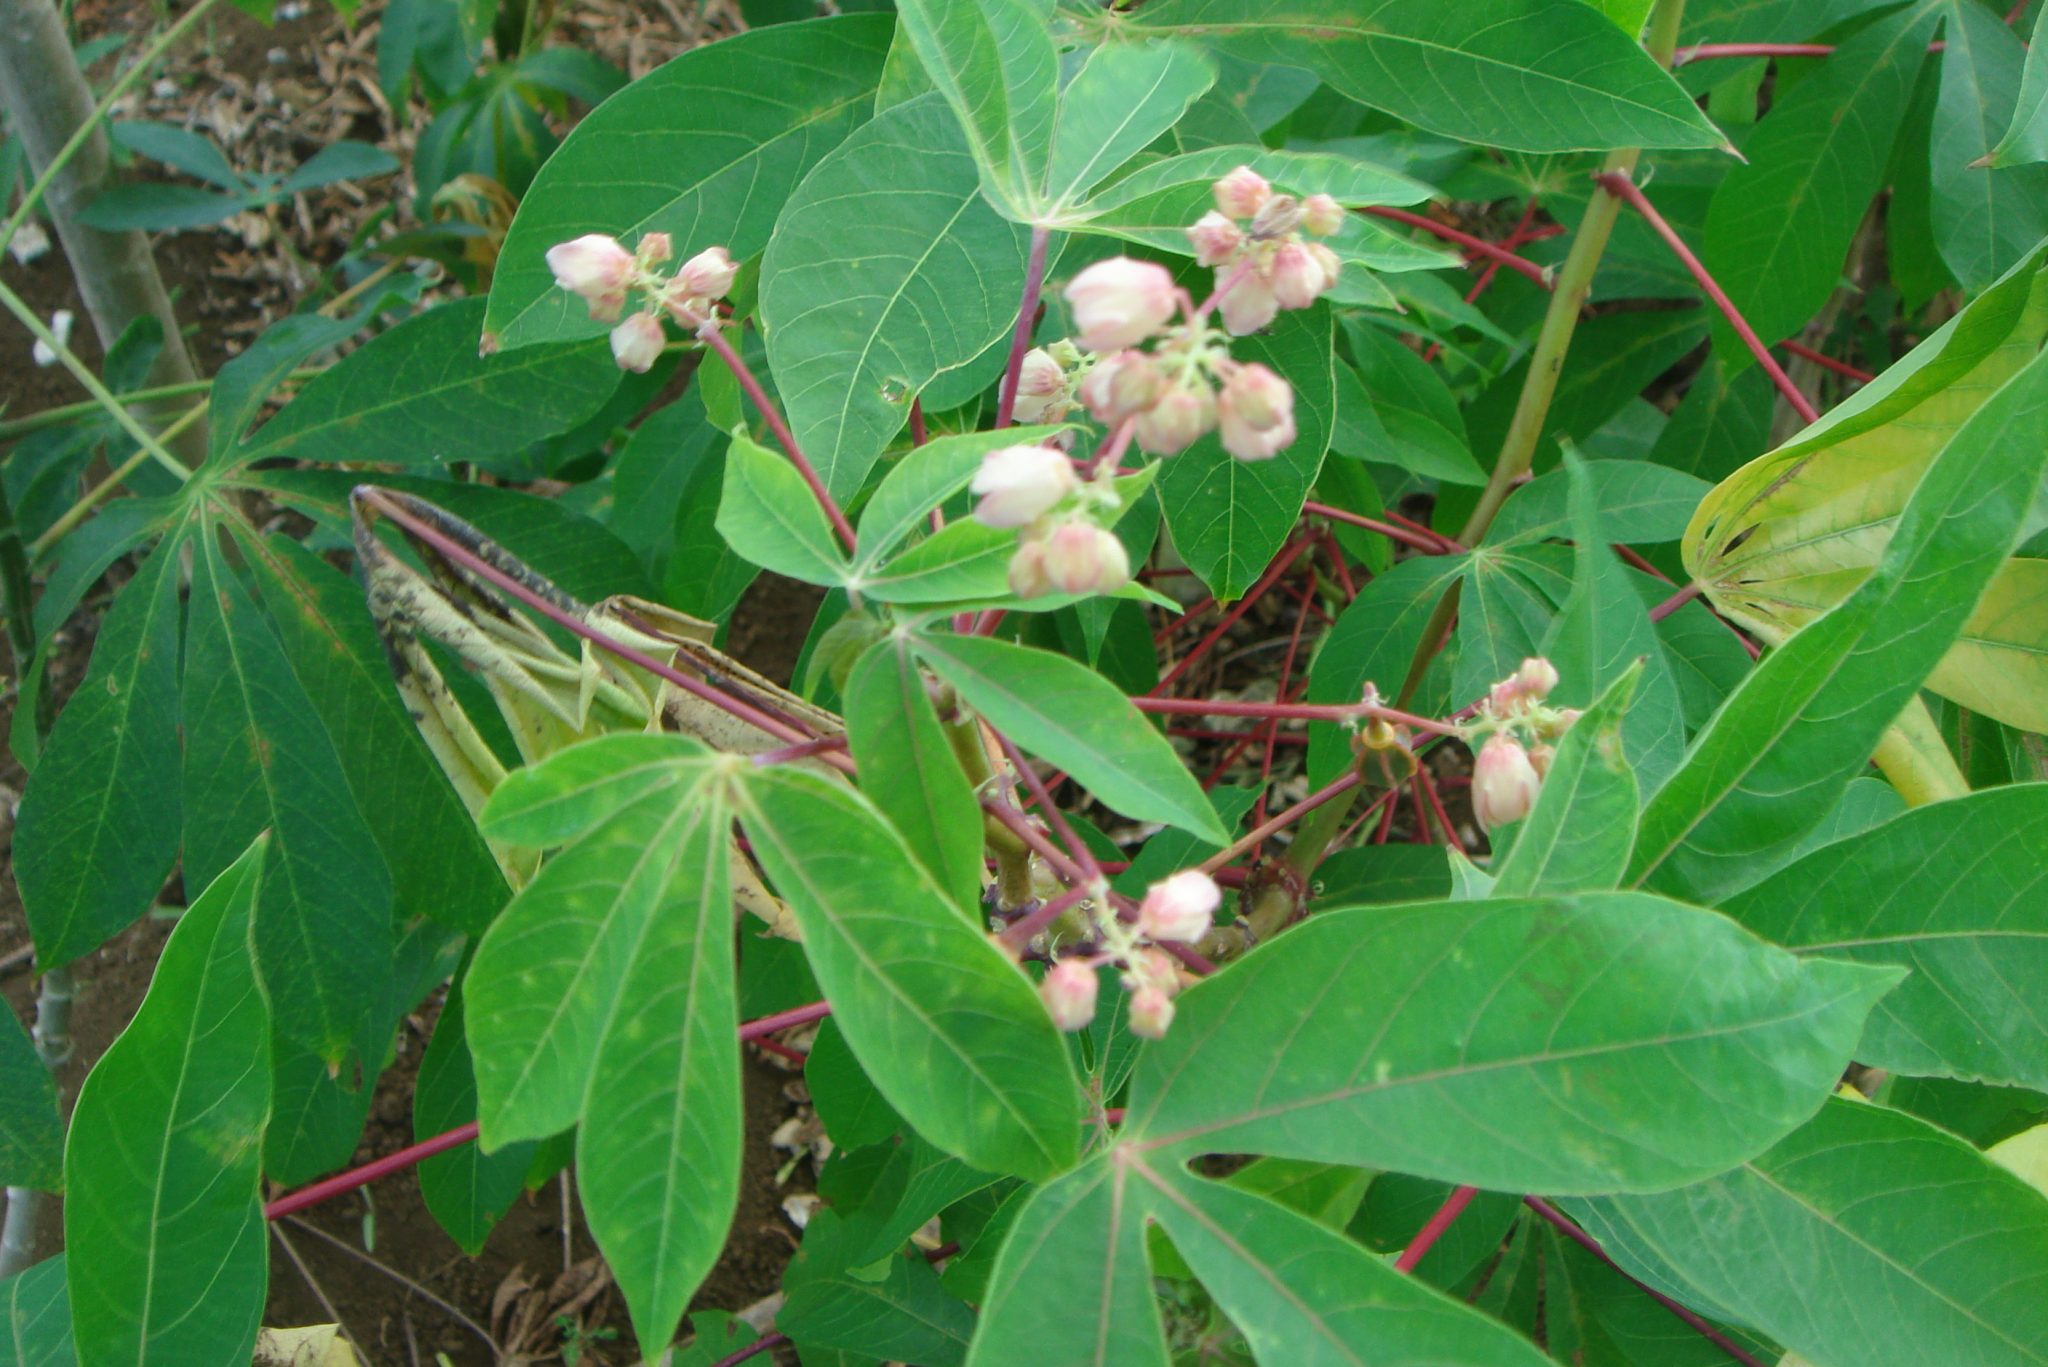 Cassava in flower